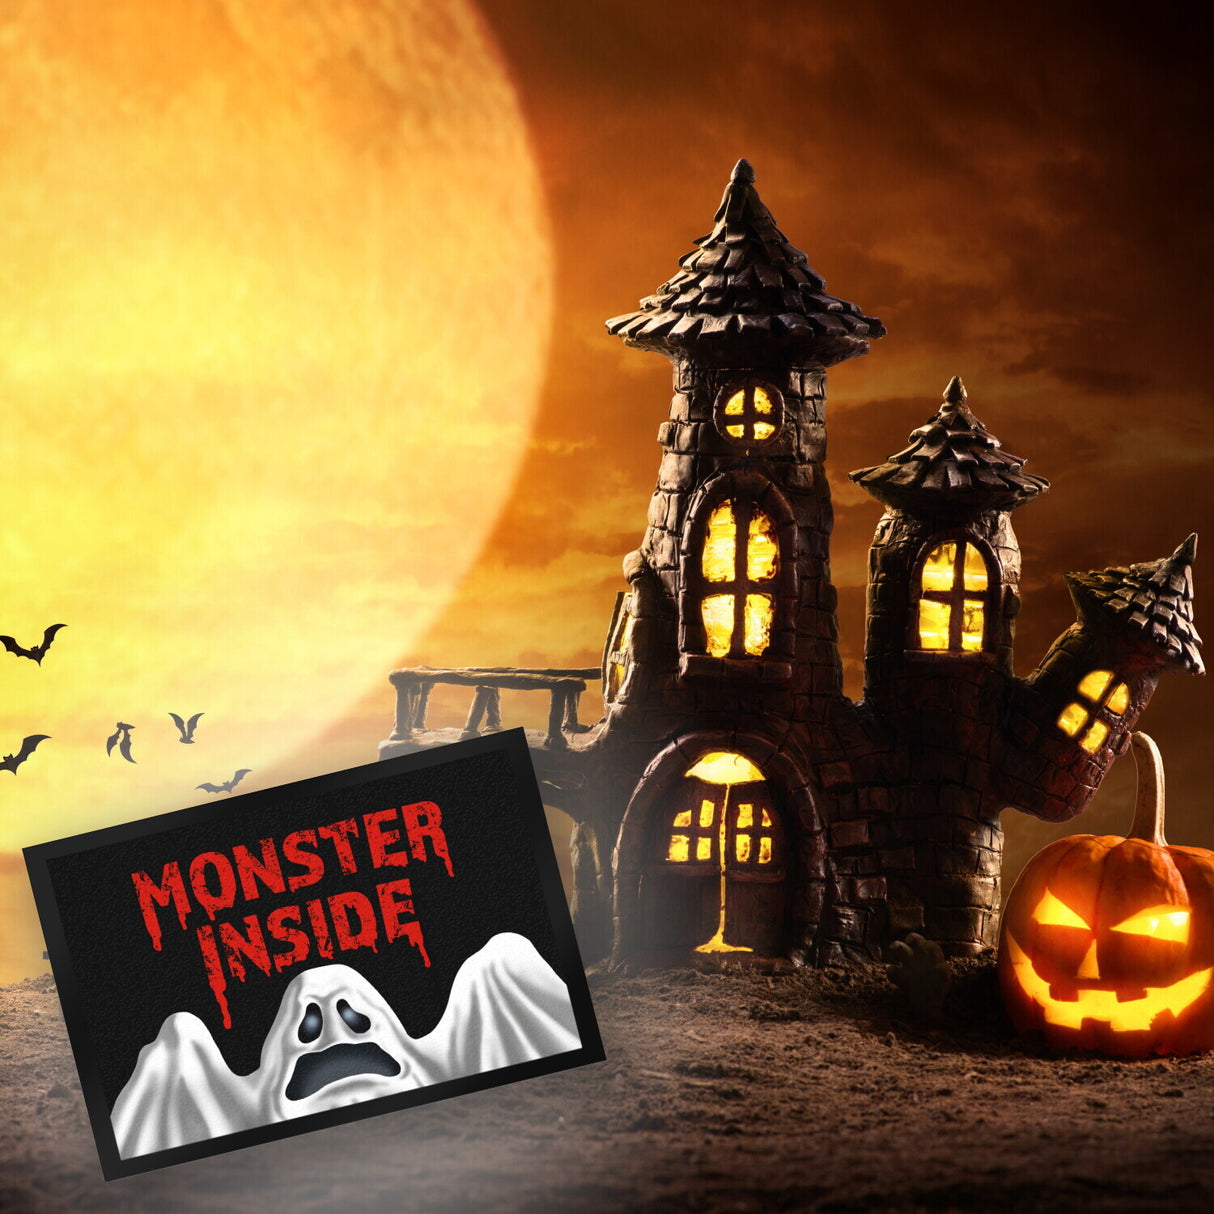 Monster Inside Halloween Fußmatte mit gruseligem Geist Motiv